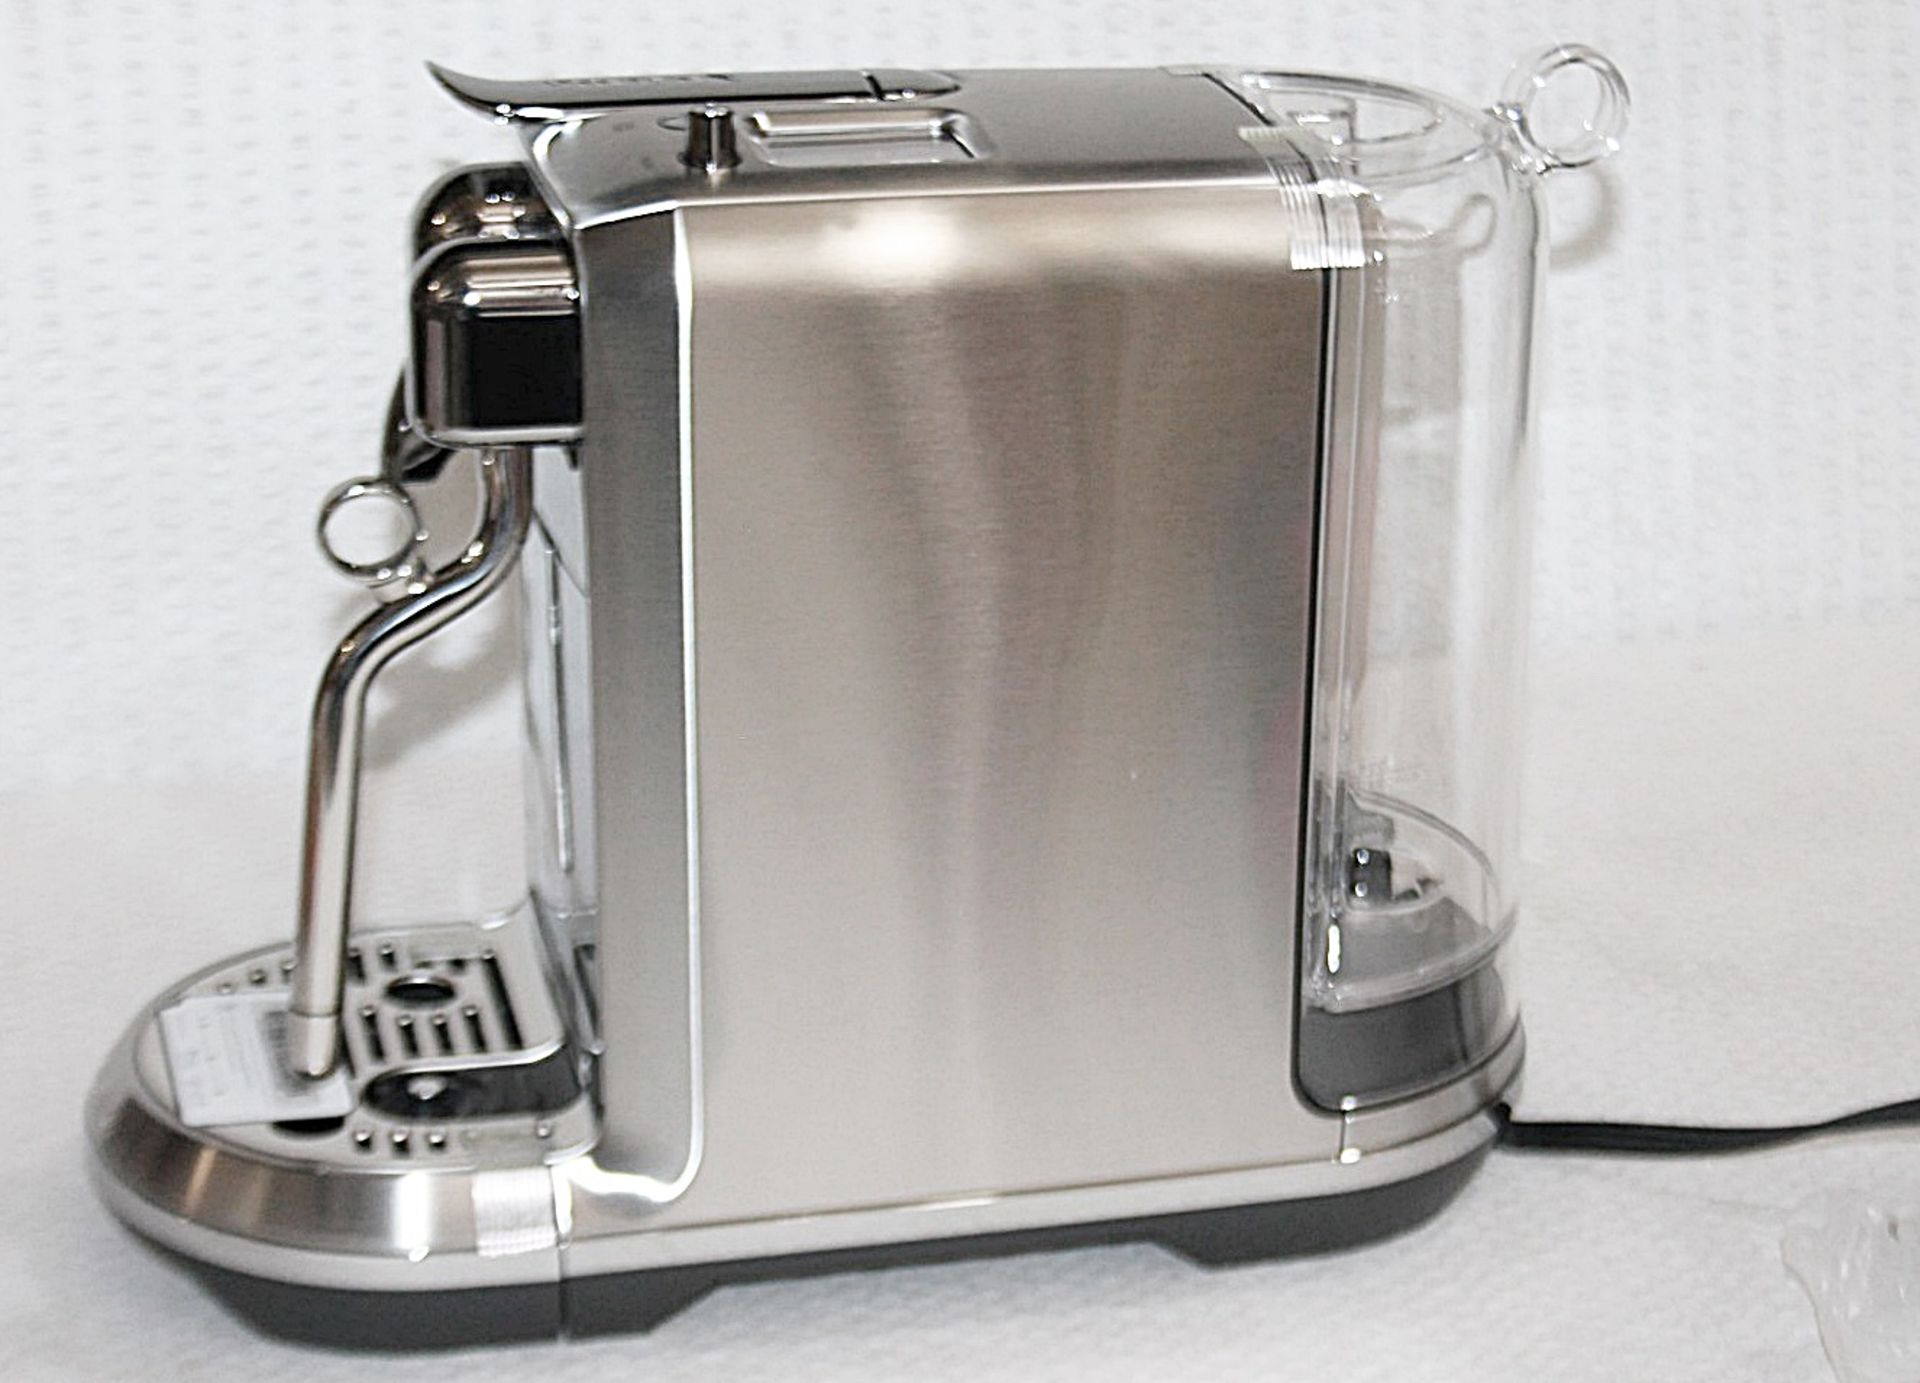 1 x NESPRESSO 'Creatista Plus' Coffee Machine In Silver - Original Price £479.95 - Boxed Stock - Image 14 of 18